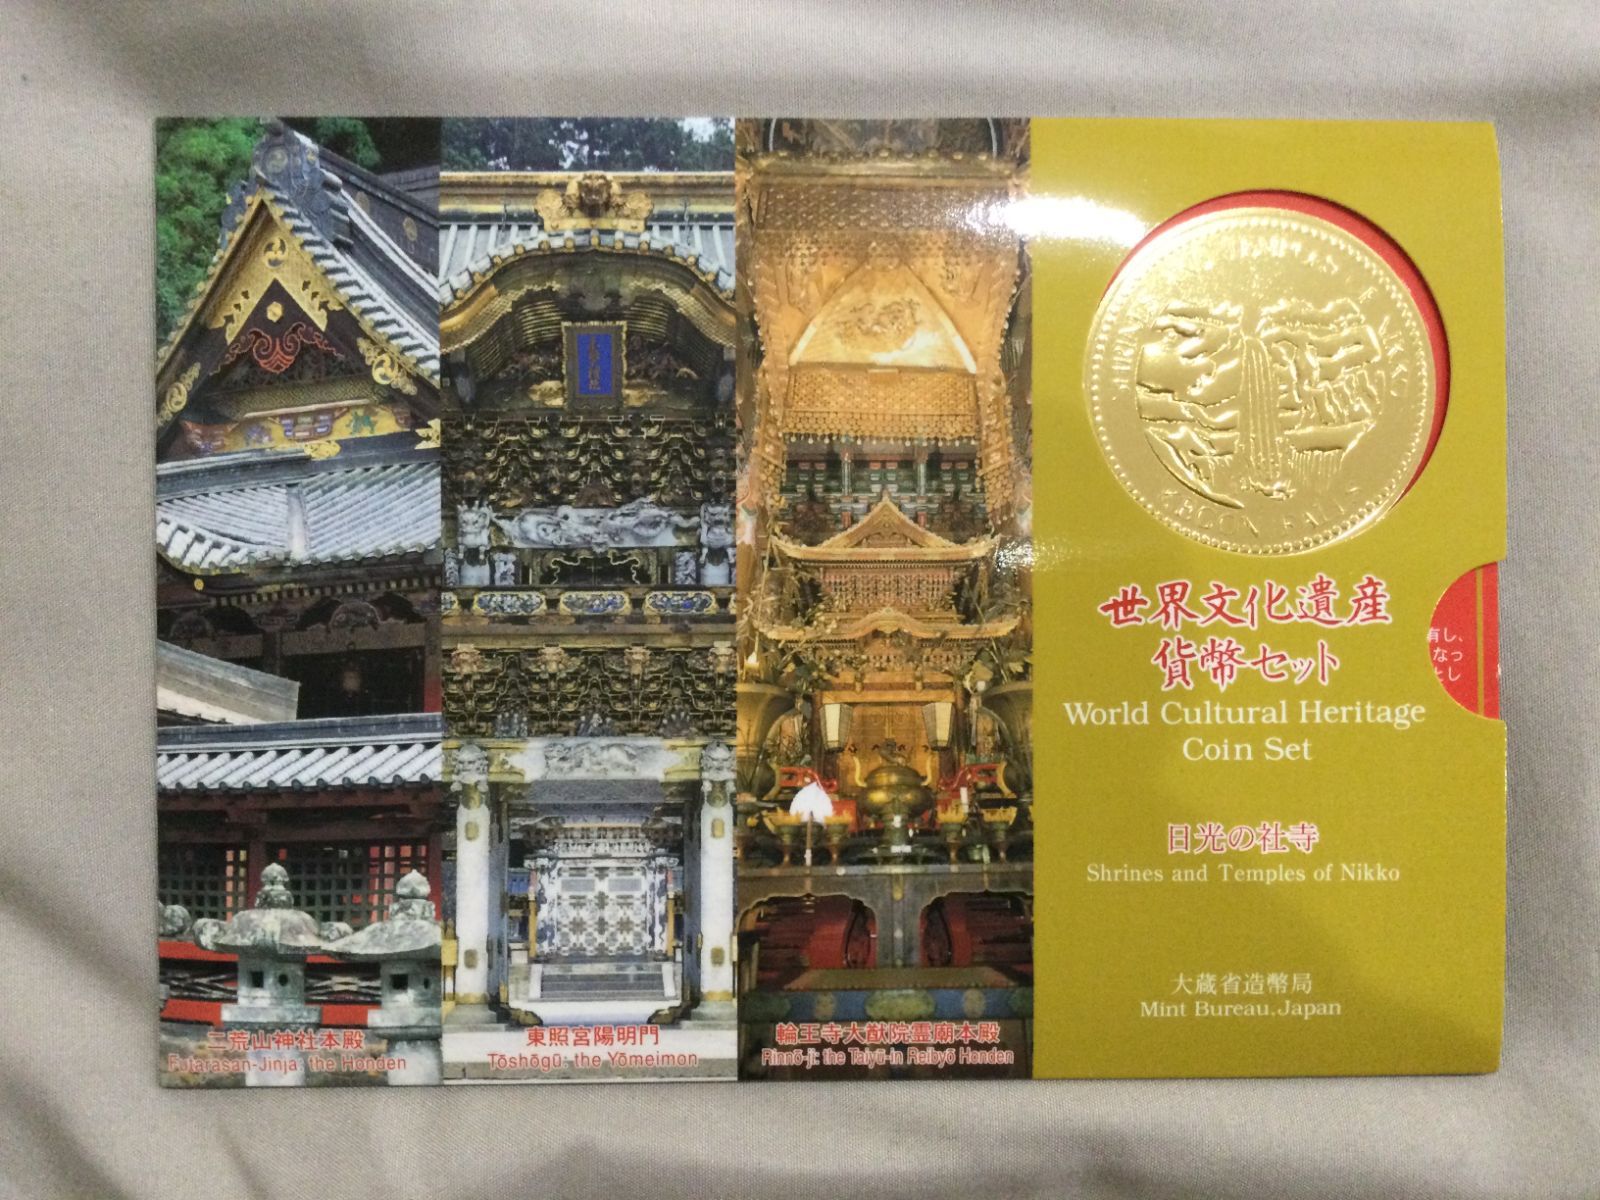 世界文化遺産貨幣セット 日光の社寺 - 旧貨幣